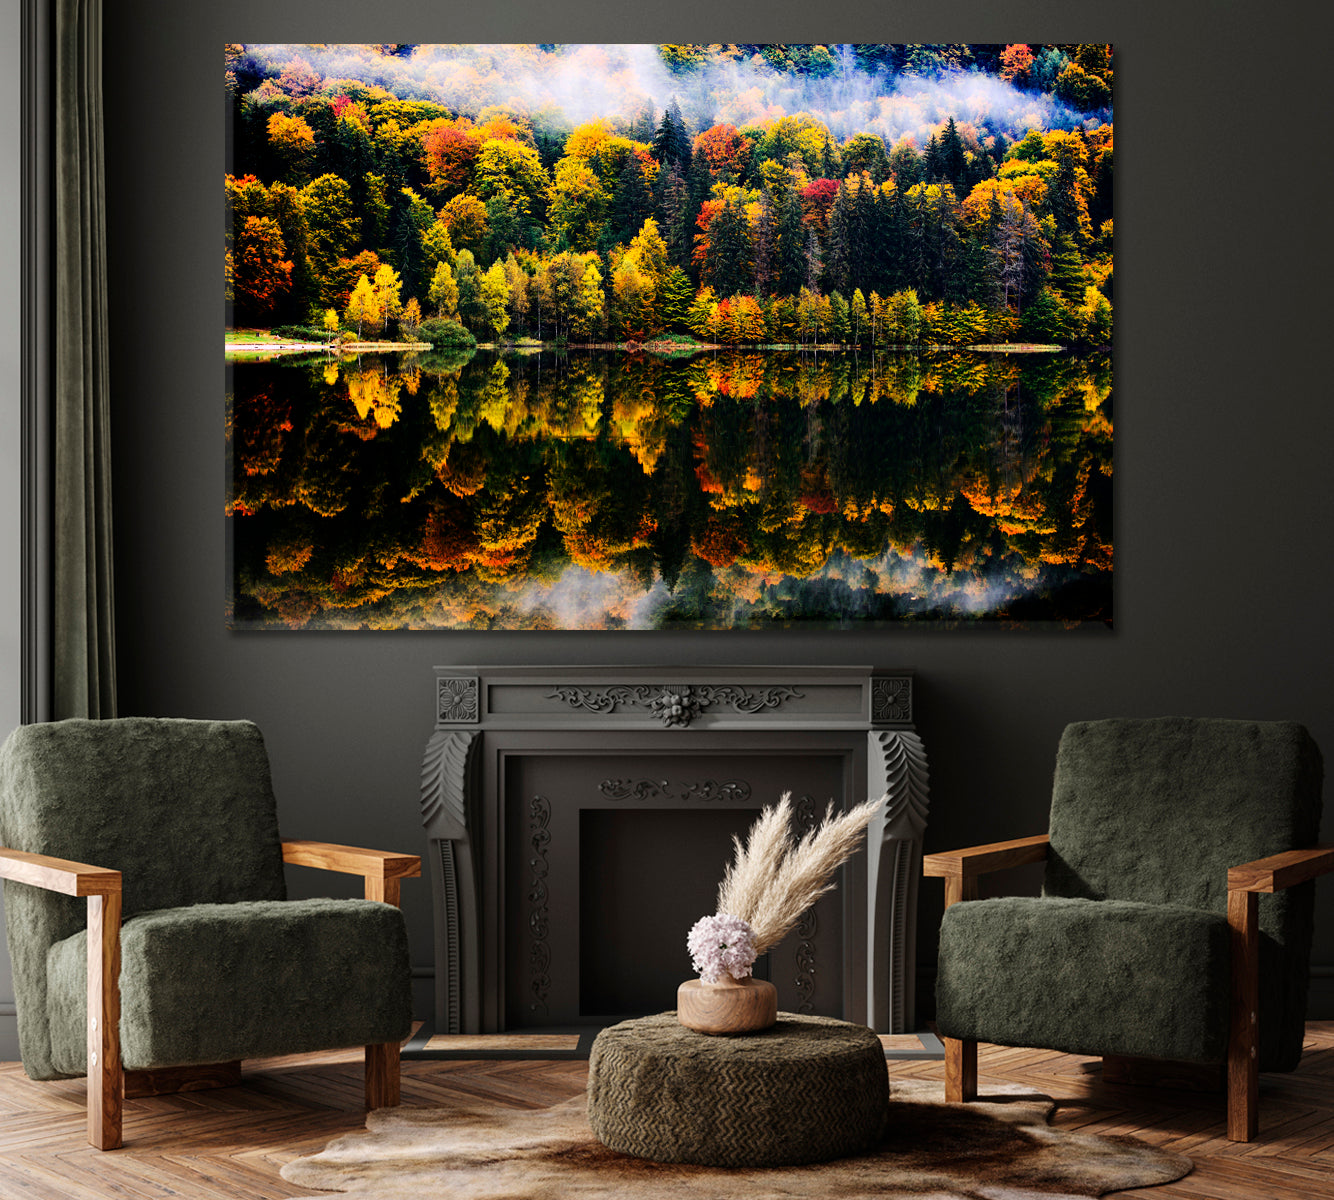 Autumn Landscape in Romania Canvas Print ArtLexy 1 Panel 24"x16" inches 